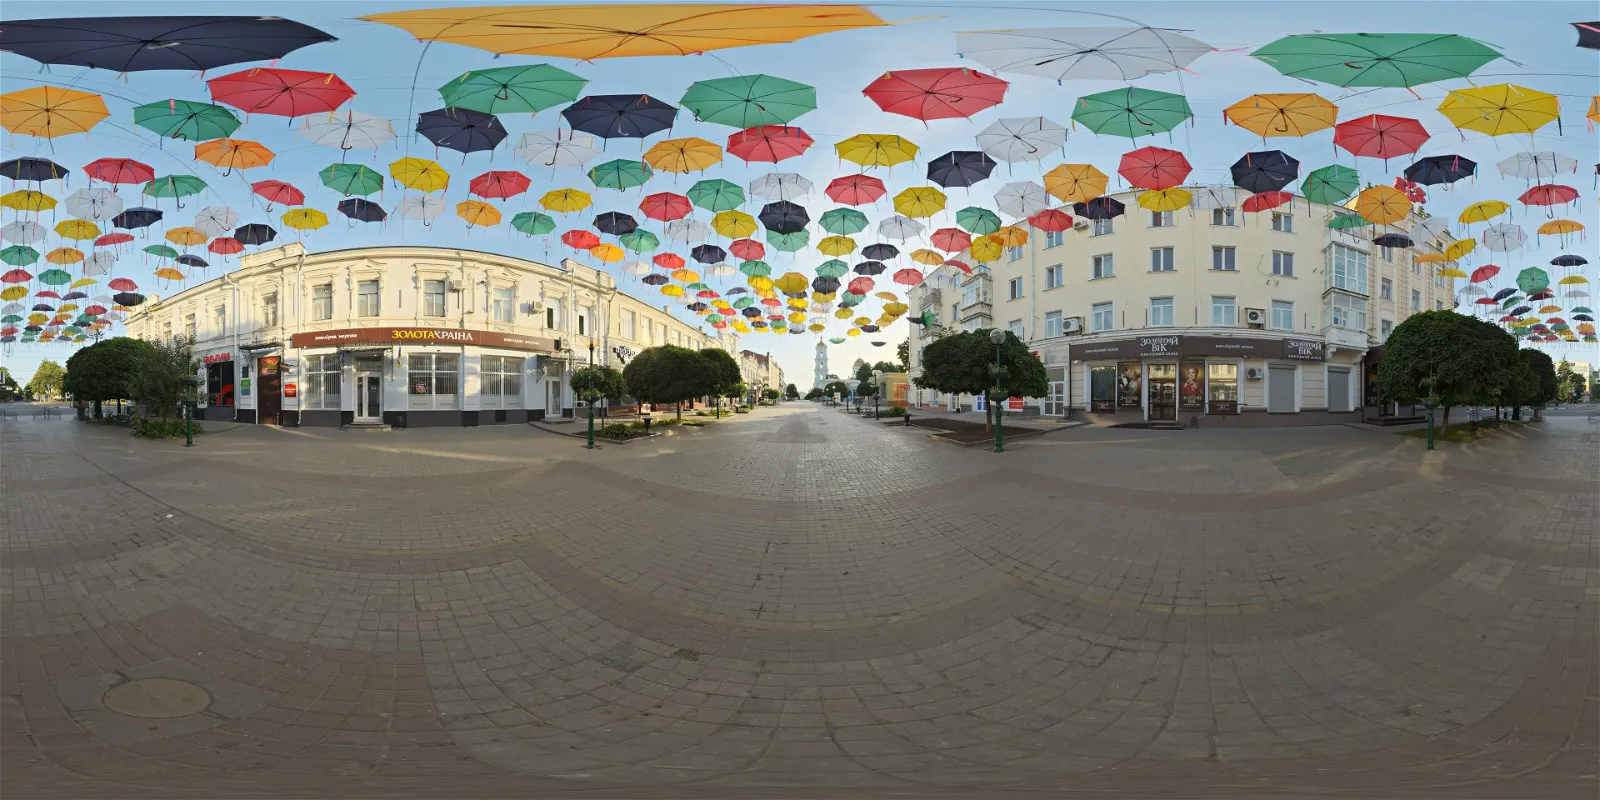 HDRI – Outdoor Umbrellas – urban